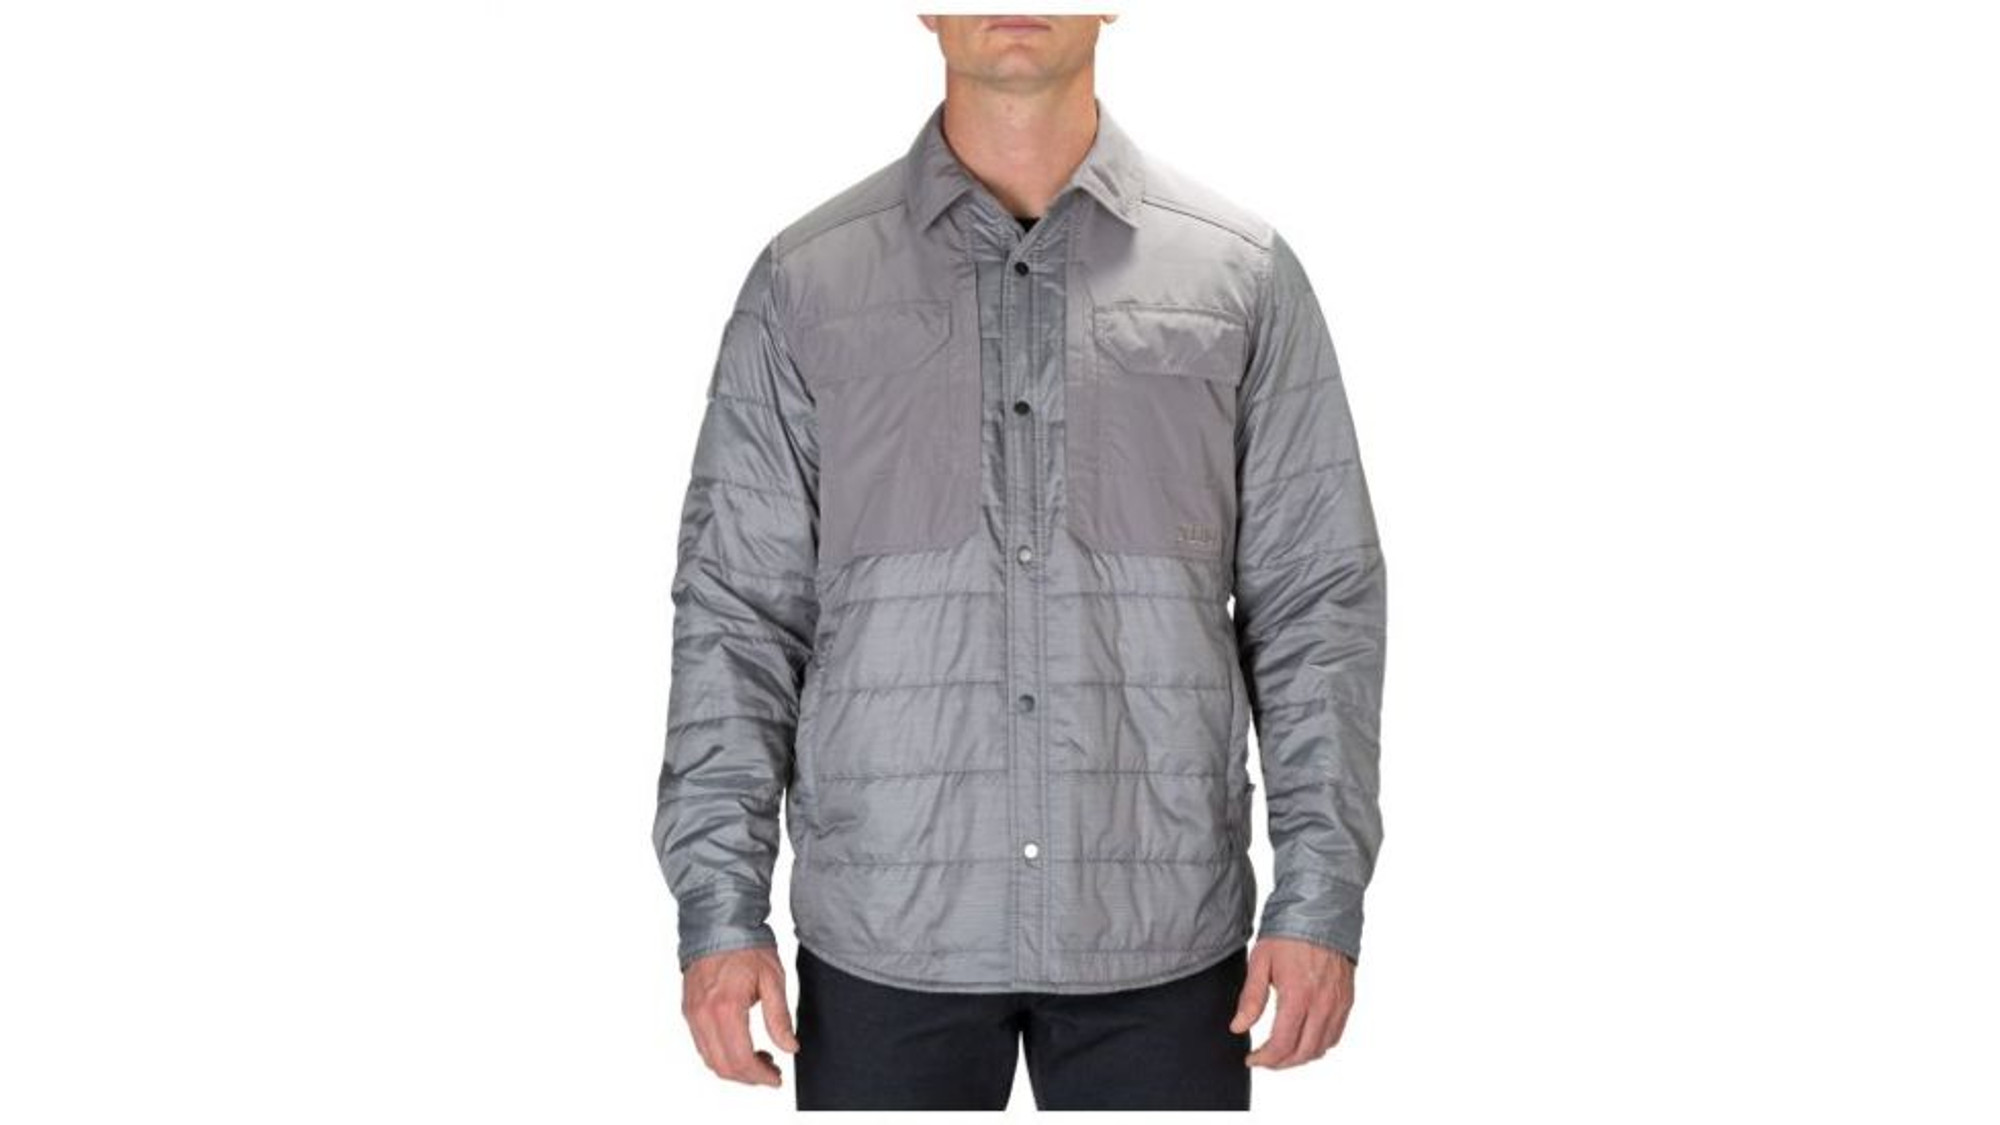 Peninsula Insulator Shirt Jacket - KR5-721233563XL